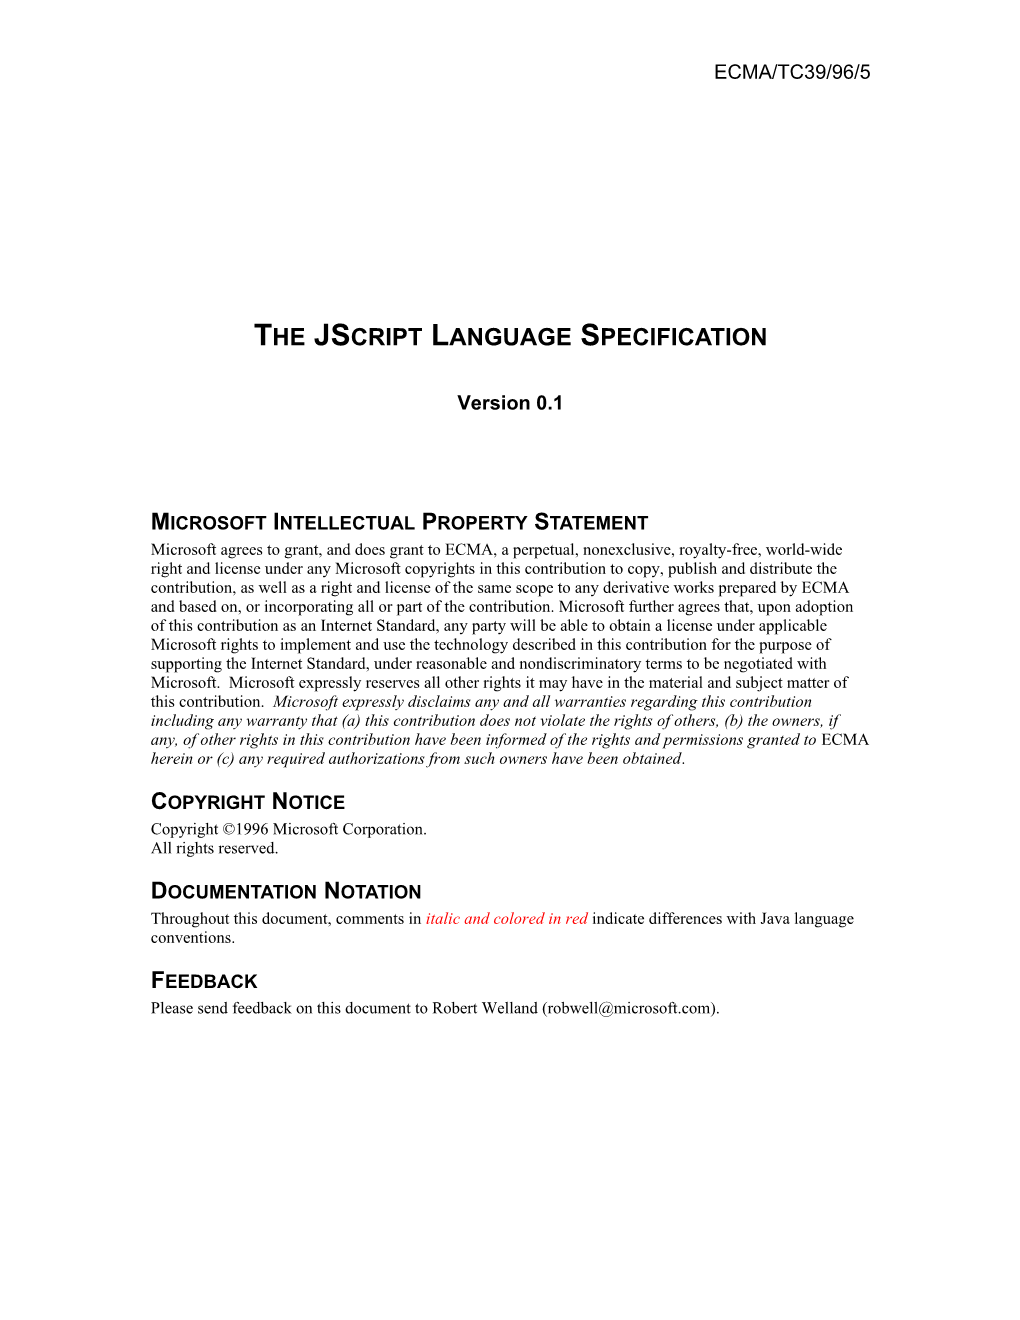 The Jscript Language Specification, Version